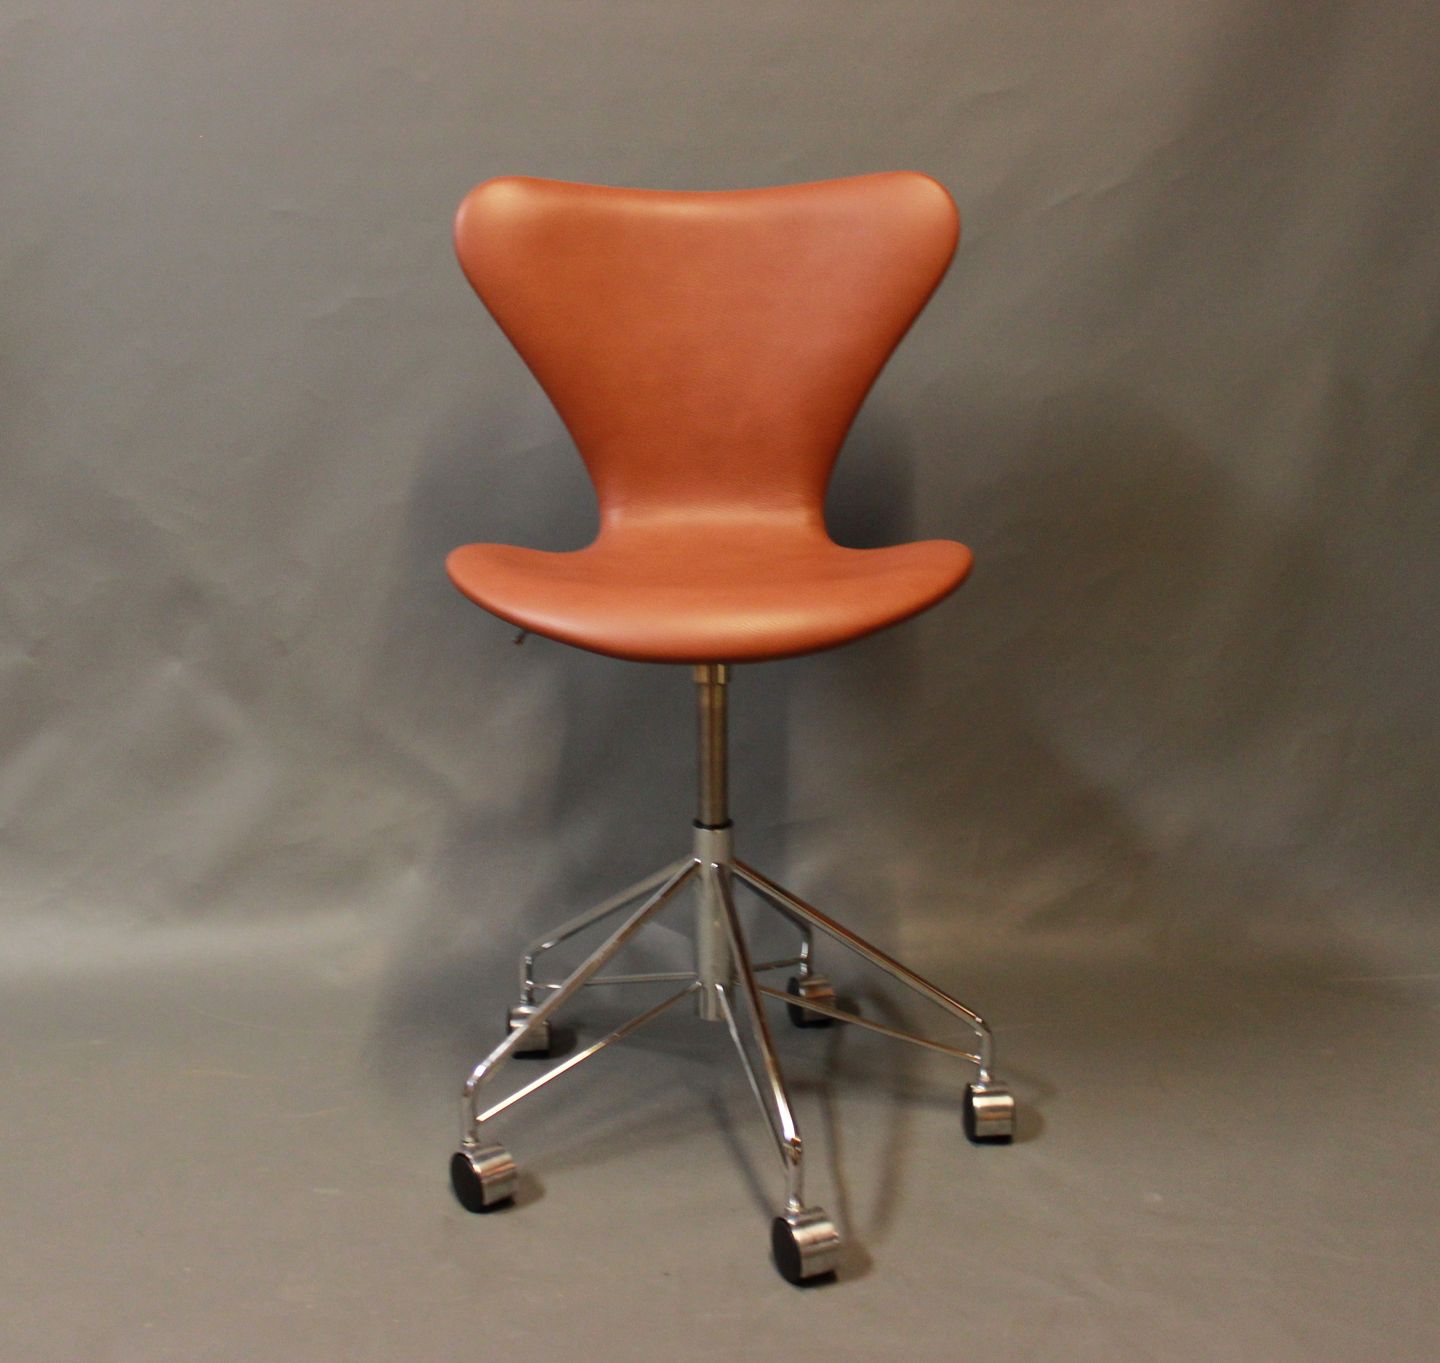 Syver kontorstol, model 3117, i cognac farvet læder af Arne Jacobsen og - Osted Antik & Design